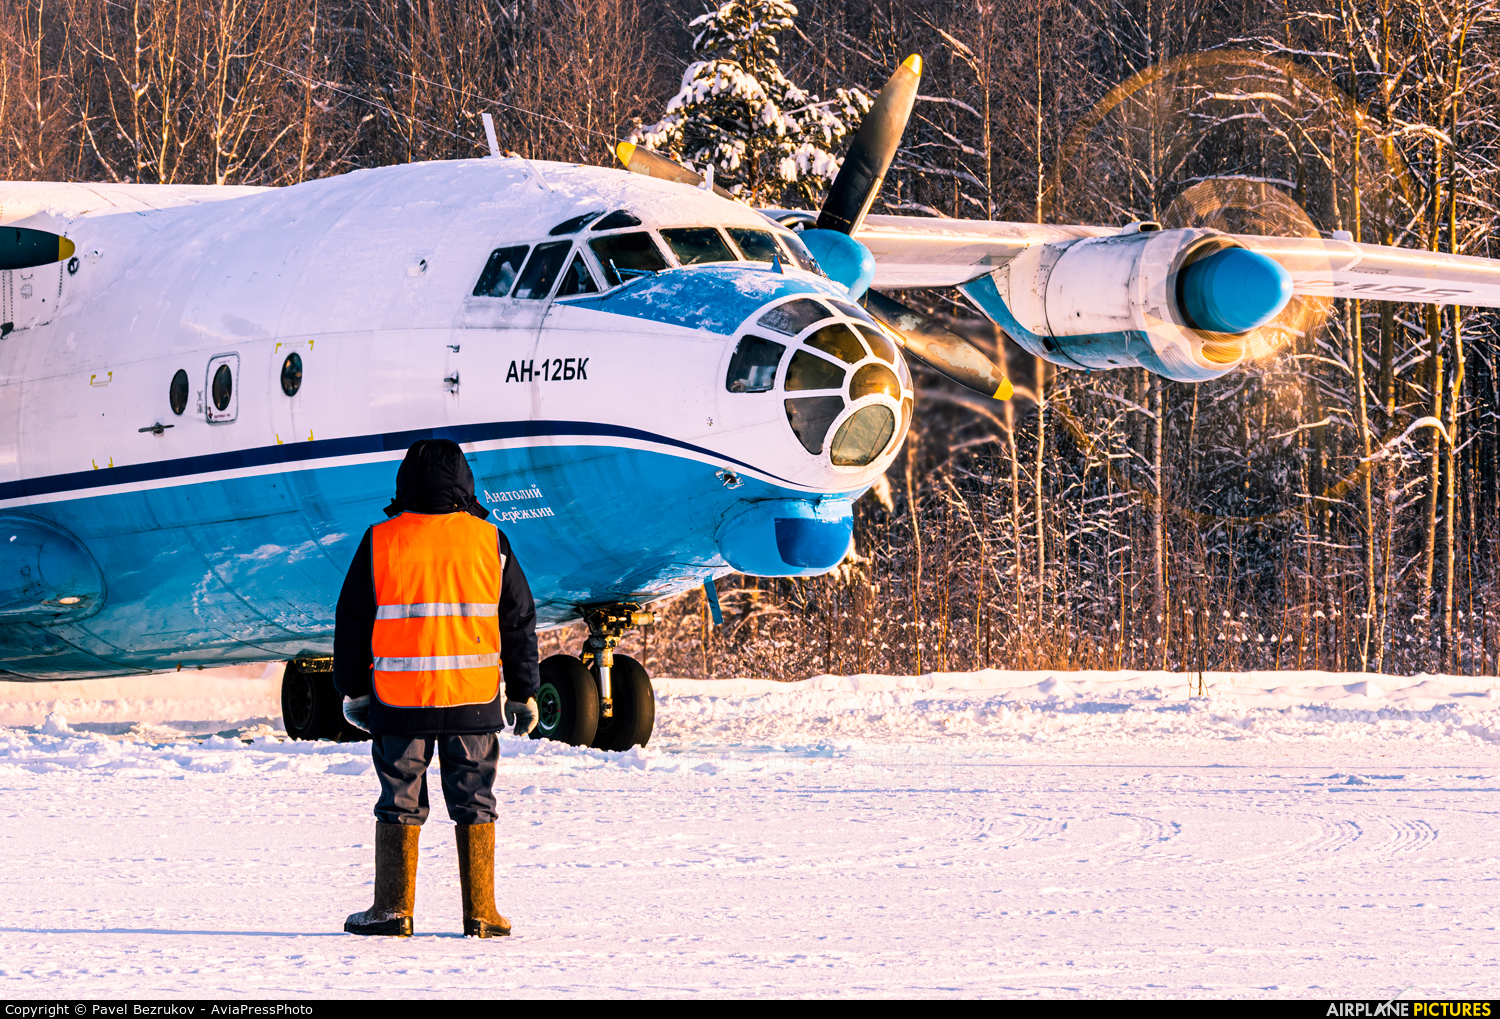 SibNIA 12195 aircraft at Ivanovo - South